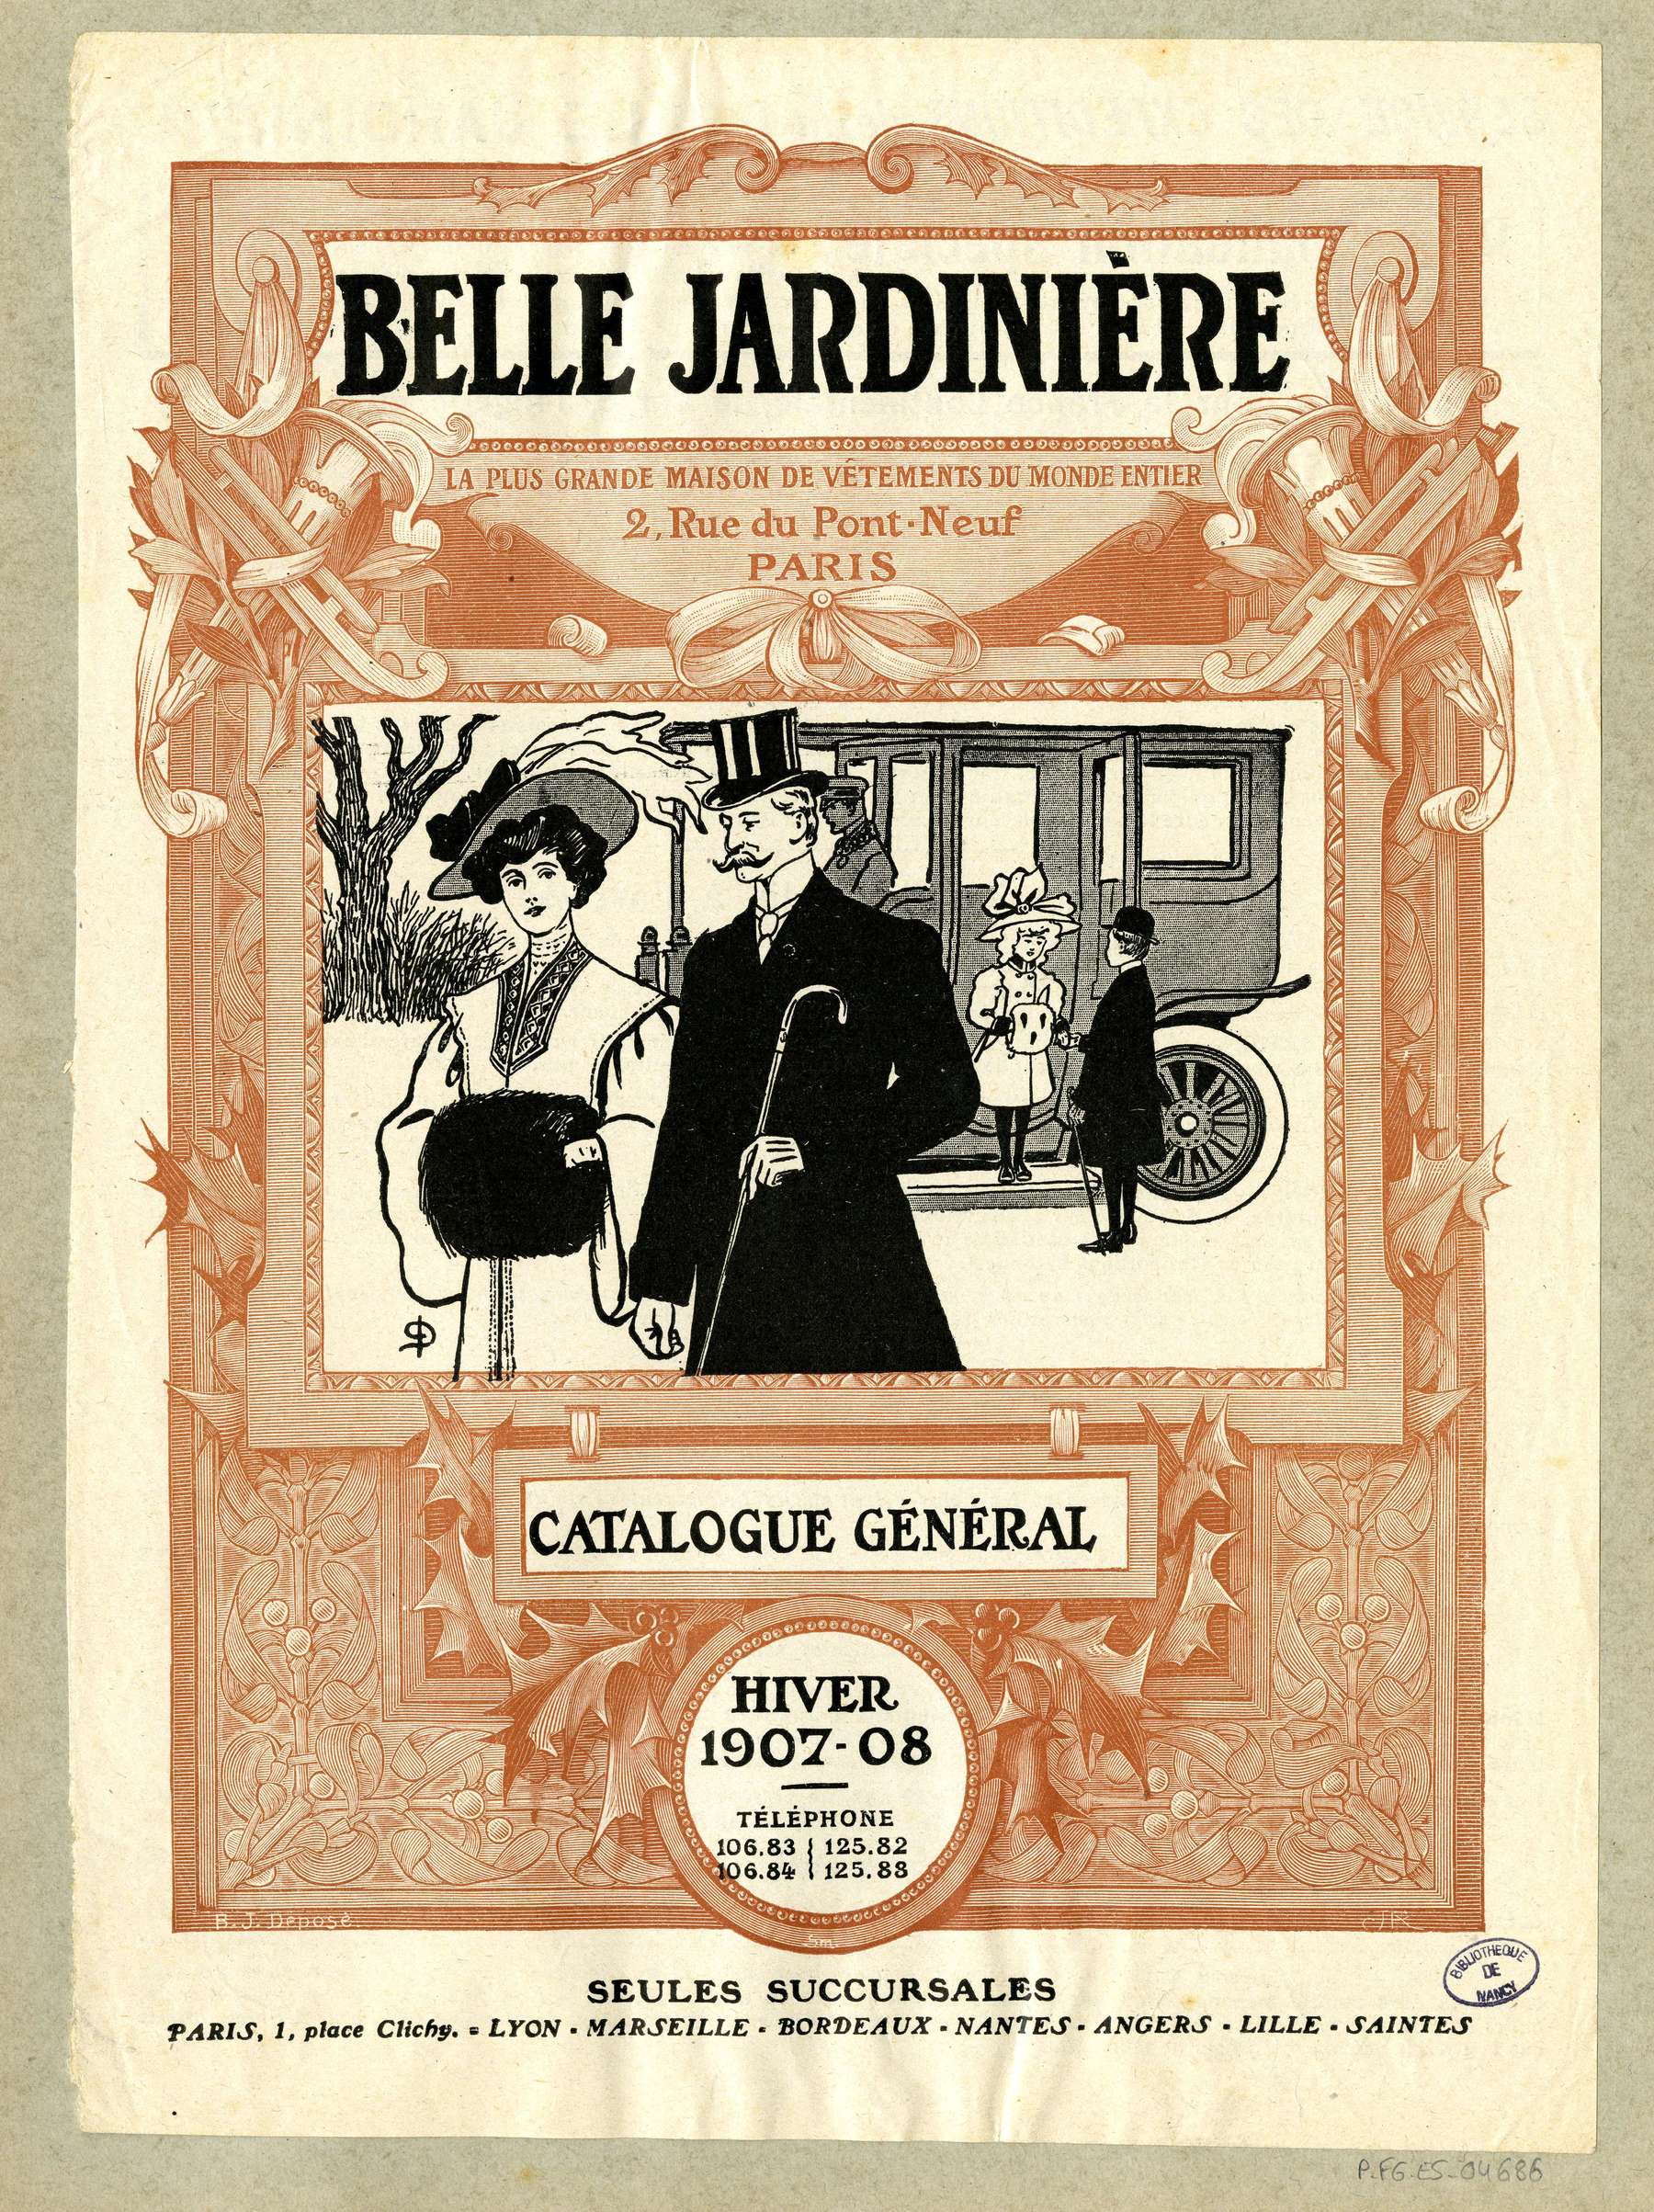 Contenu du Catalogue général hiver 1907-08